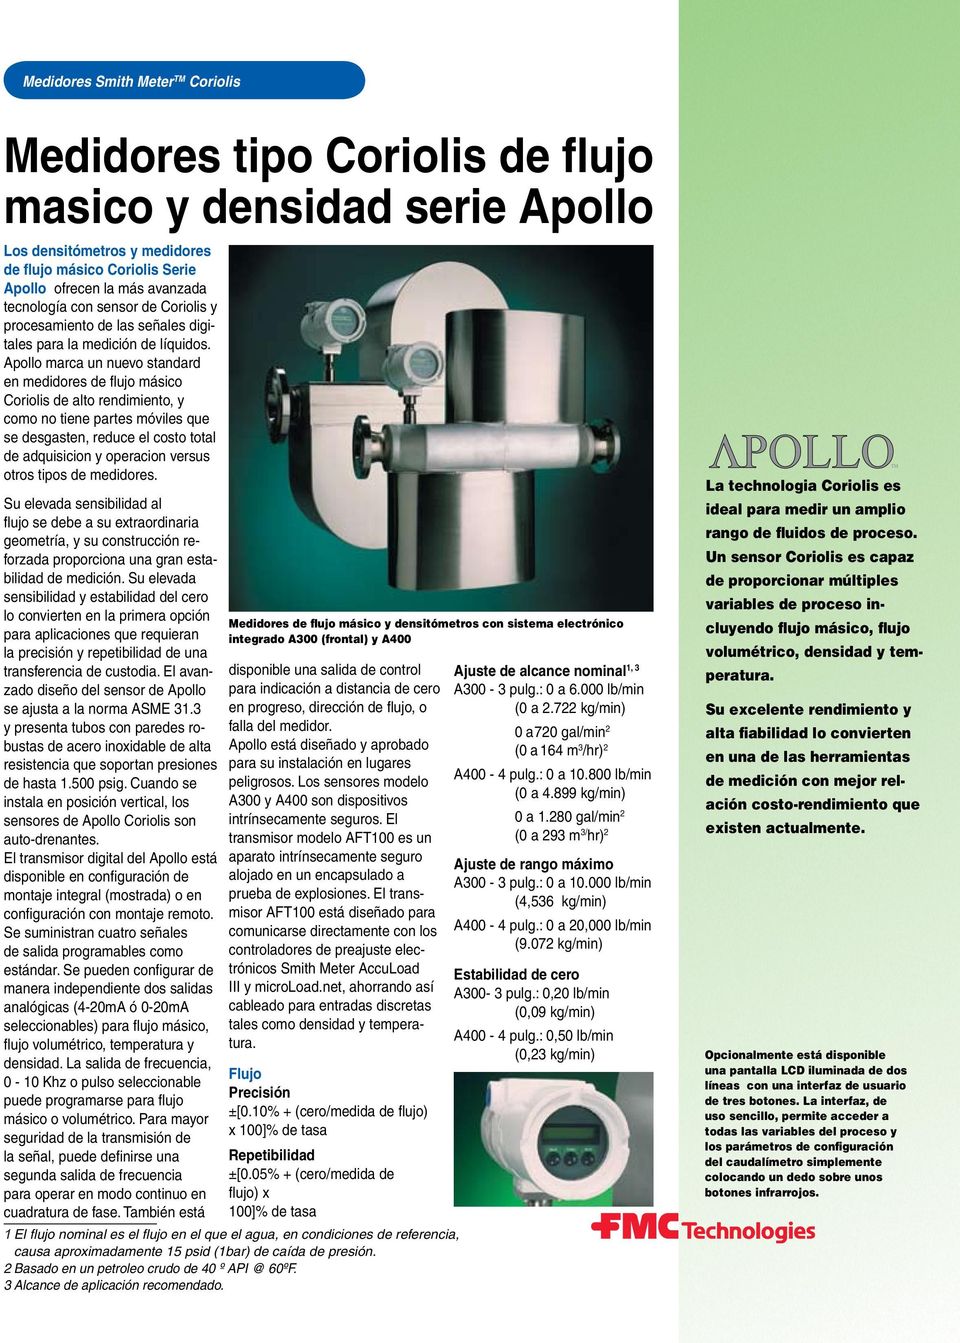 Apollo marca un nuevo standard en medidores de flujo másico Coriolis de alto rendimiento, y como no tiene partes móviles que se desgasten, reduce el costo total de adquisicion y operacion versus